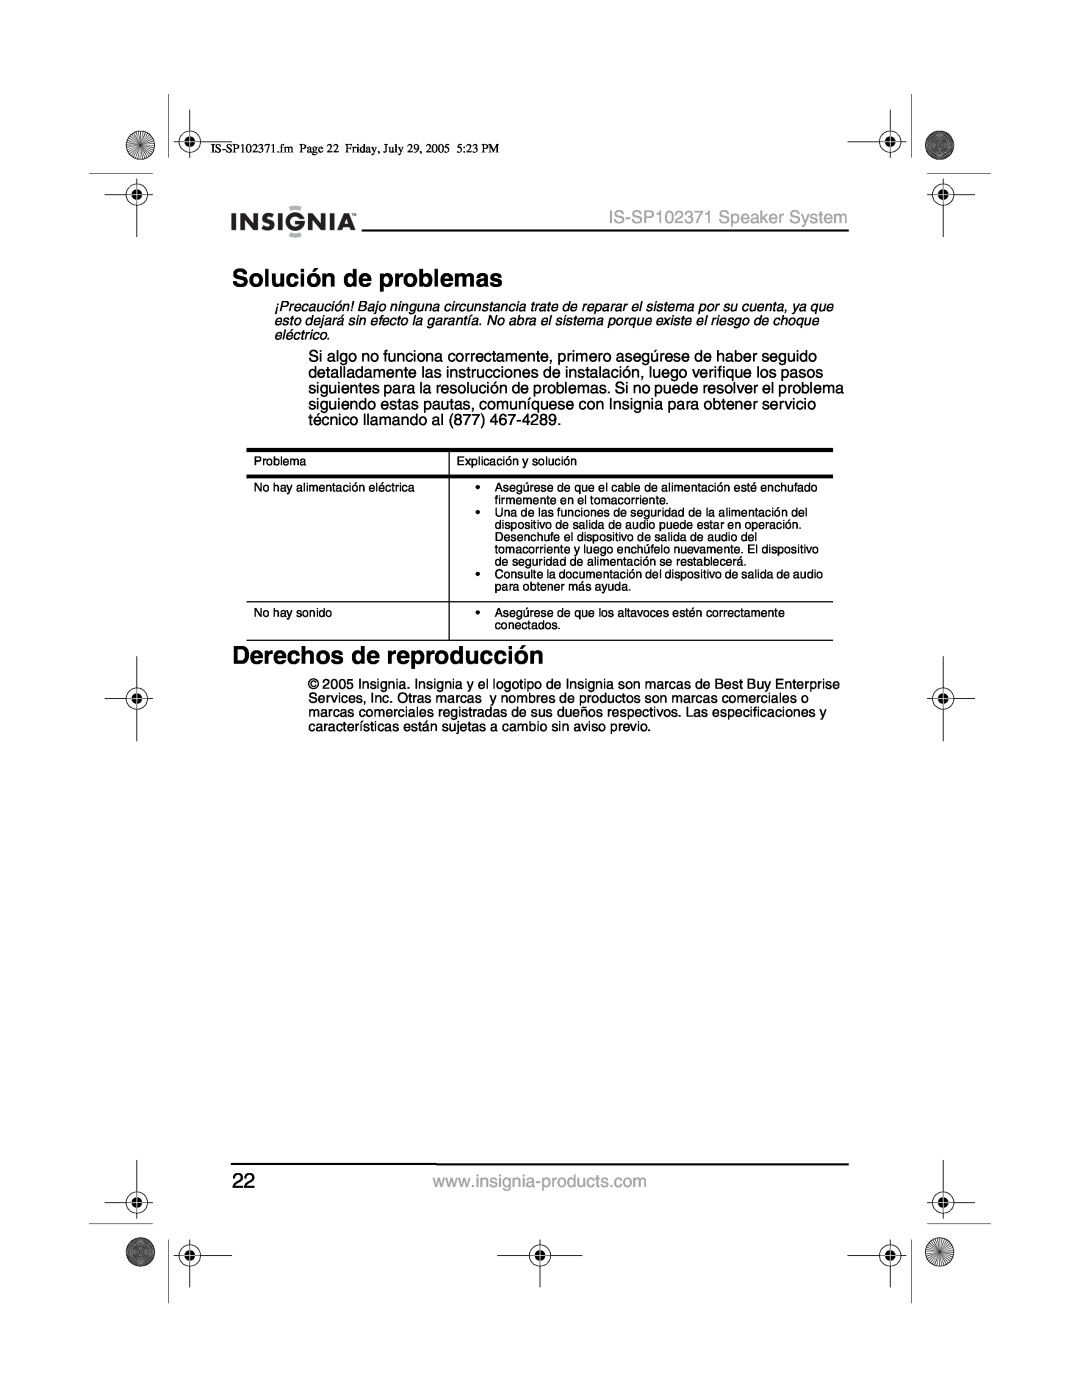 Insignia manual Solución de problemas, Derechos de reproducción, IS-SP102371Speaker System 